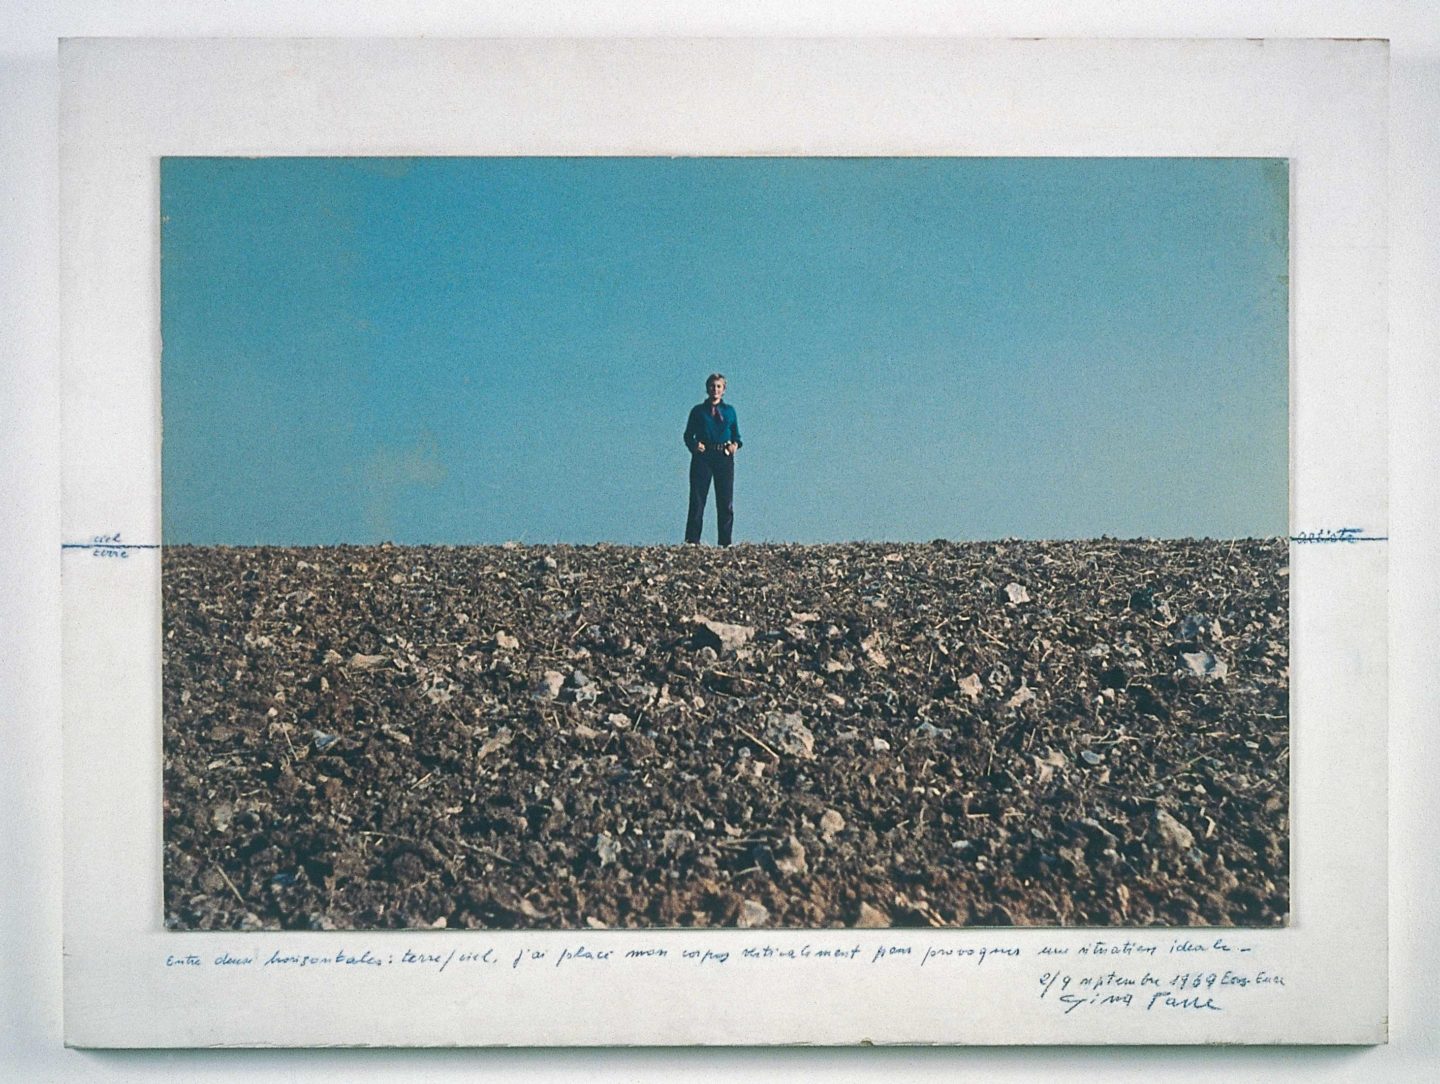 gina pane, "Situation idéale : Terre-Artiste-Ciel. 1969", Écos (Eure), 1969. Cliché de Stéphane Bellanger